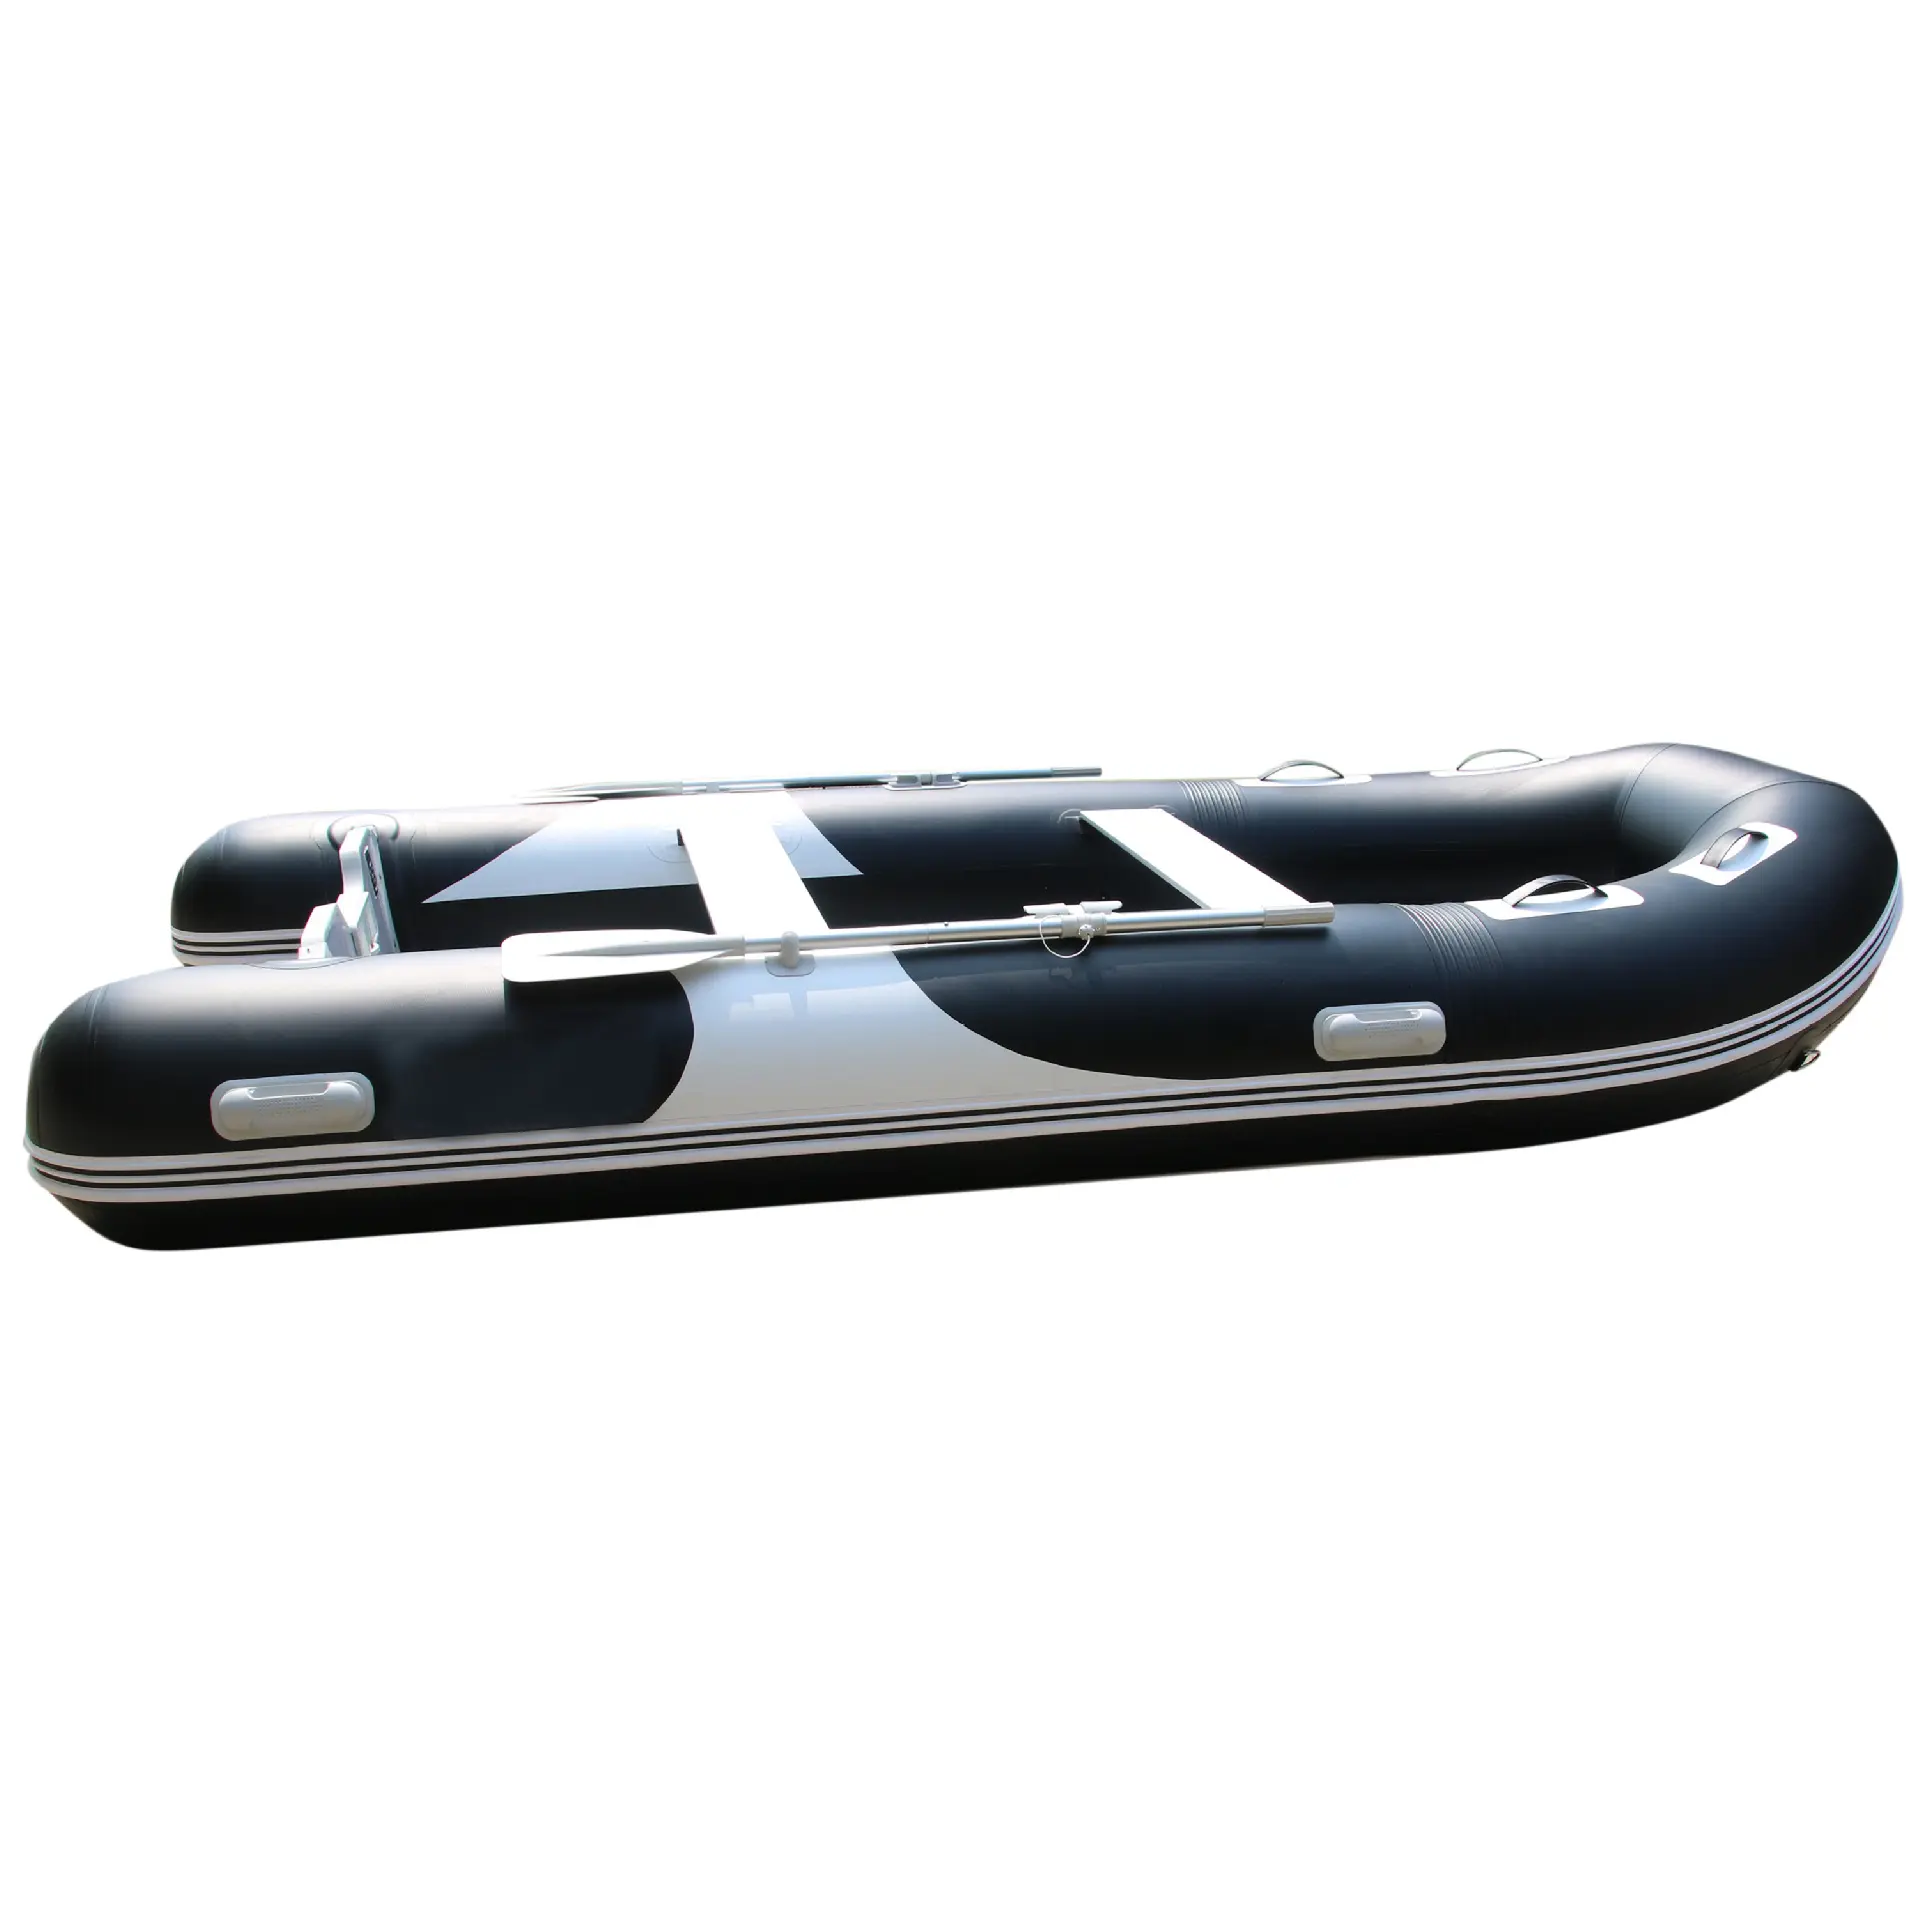 Hot Sale Aufblasbares Rennboot Gummi boot PVC Hochgeschwindigkeits-Rettungs kajak mit PVC-Stoff material